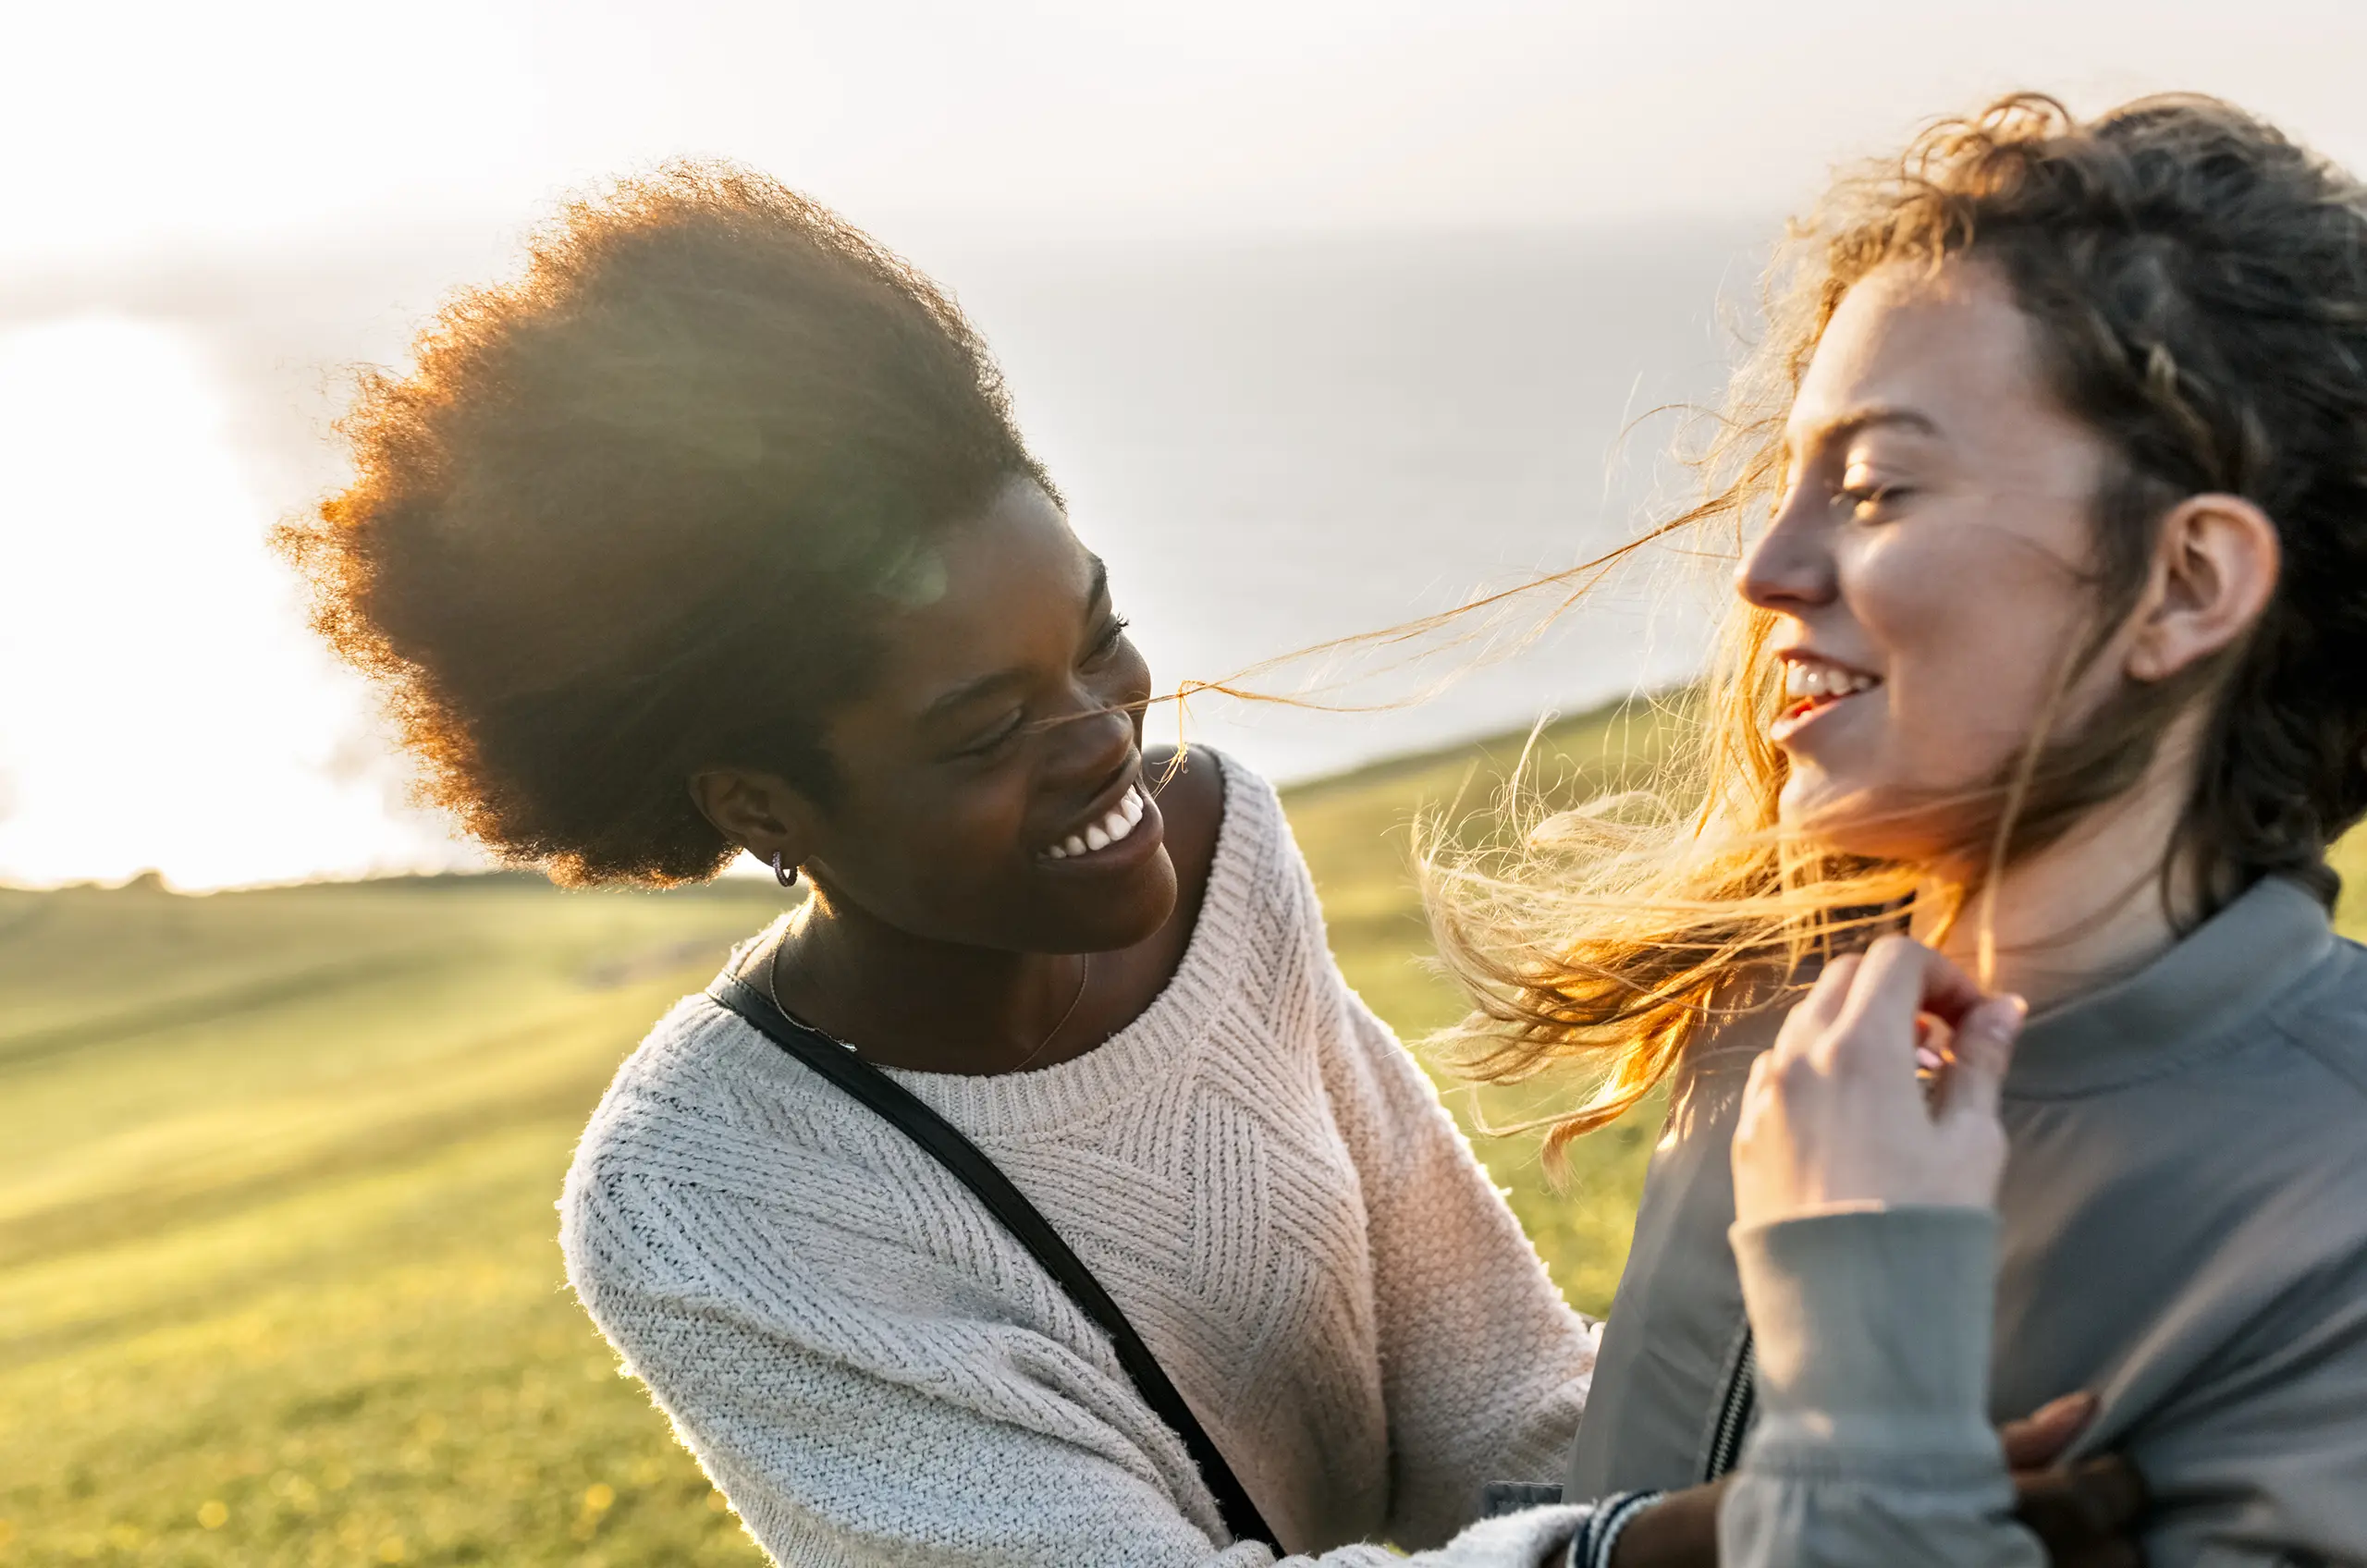 Einem Bild von zwei jungen Mädchen, die einander auf einem offenen Feld zulächeln.